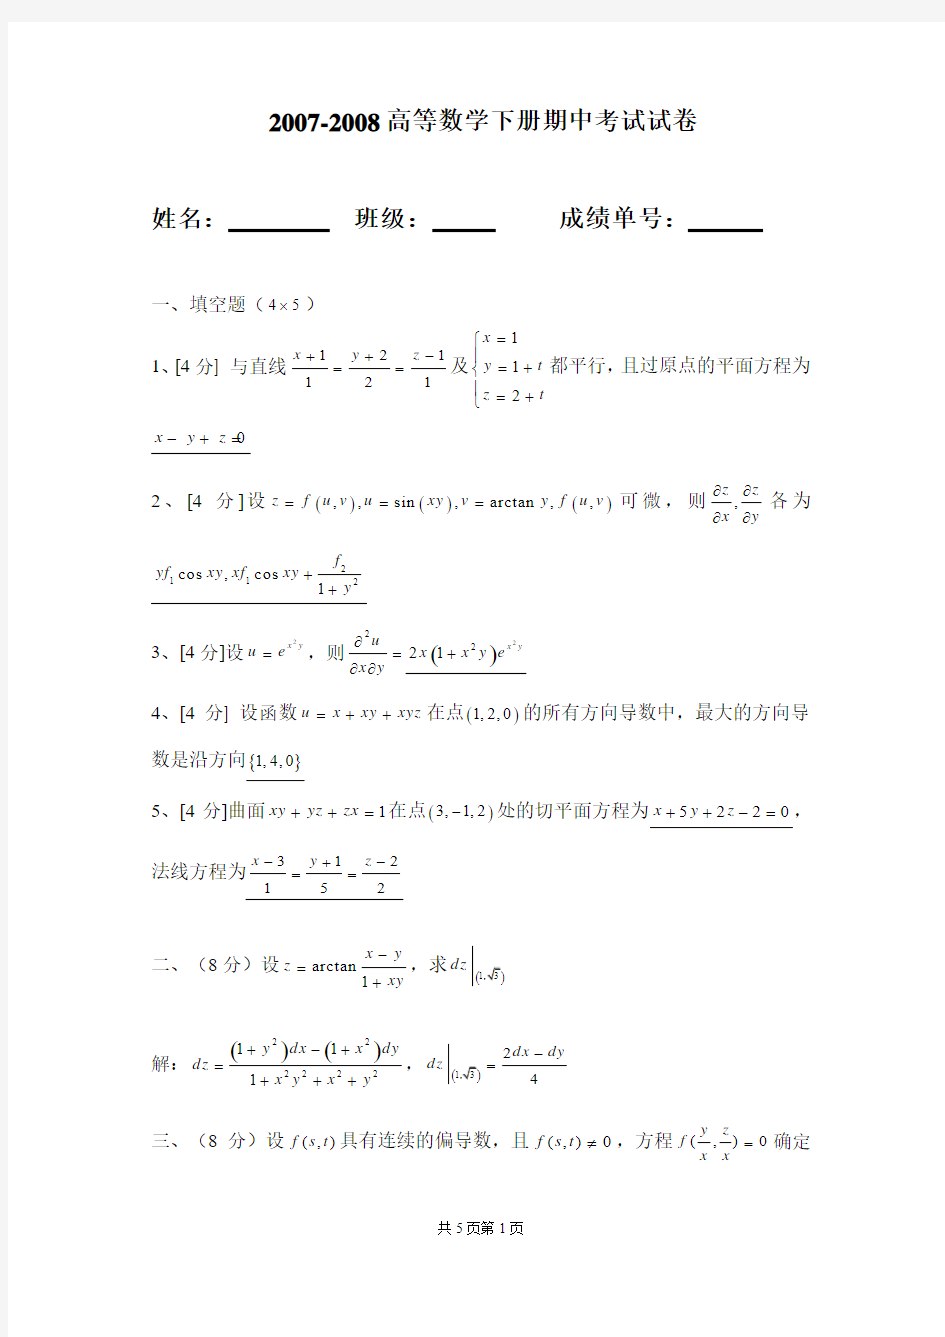 华南理工大学高等数学统考试卷下07期中卷答案